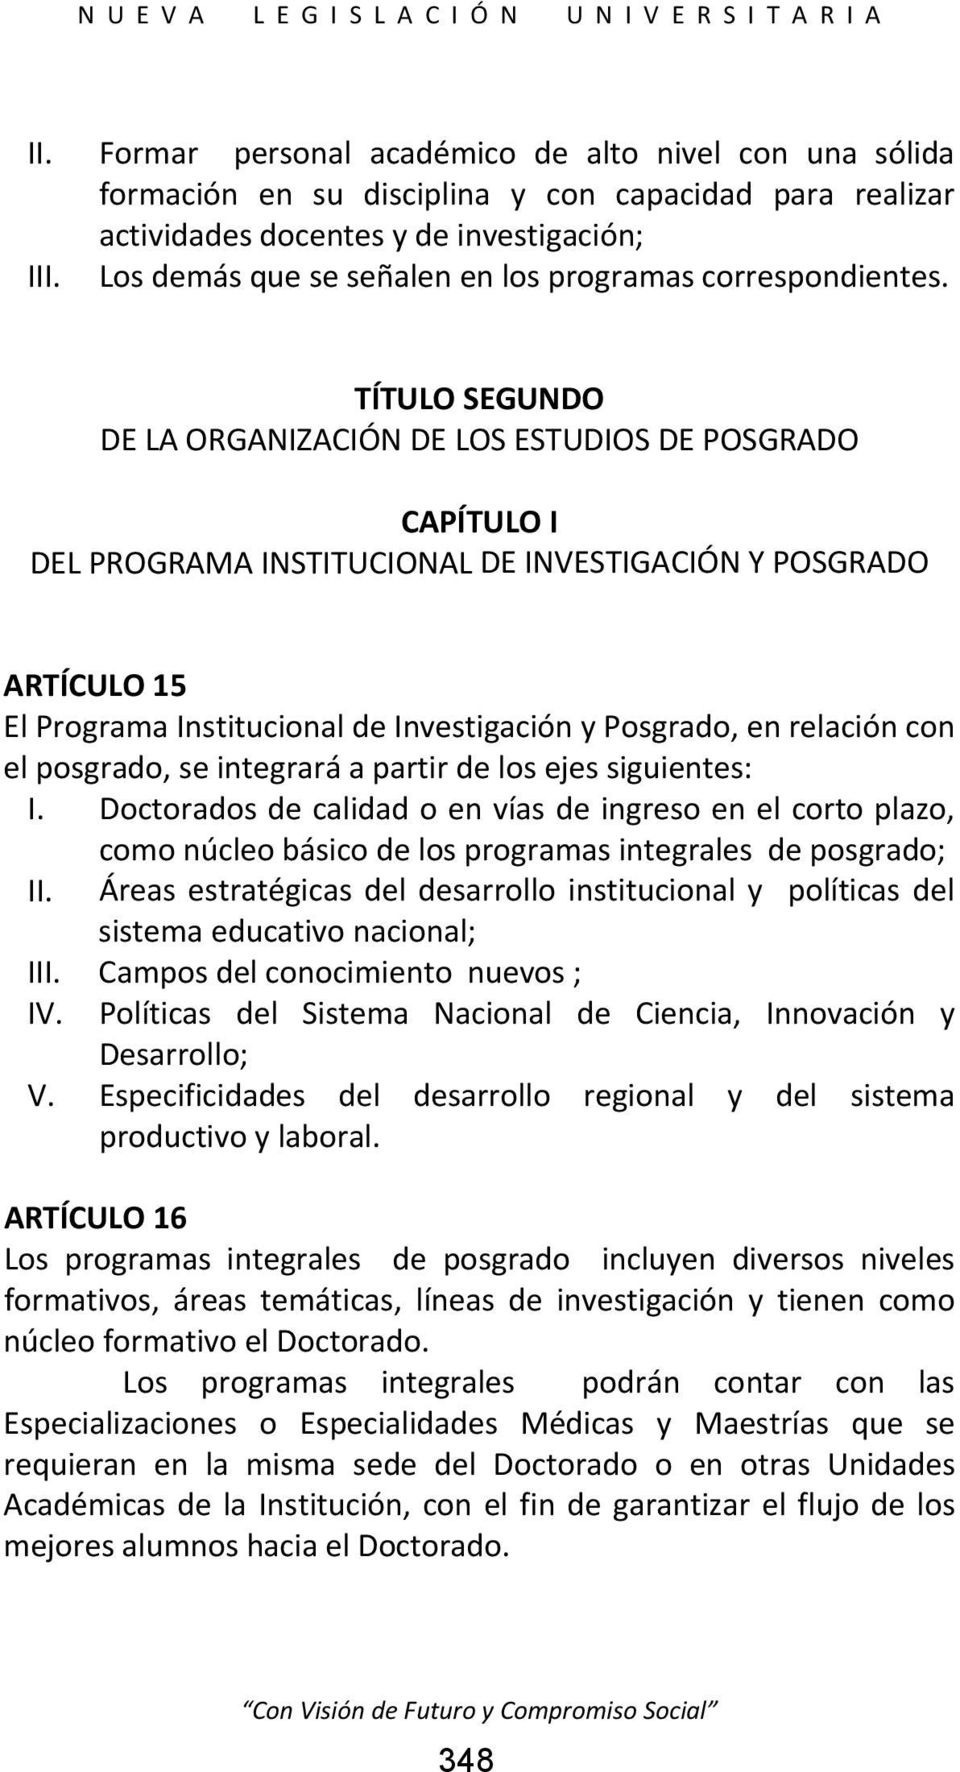 TÍTULO SEGUNDO DE LA ORGANIZACIÓN DE LOS ESTUDIOS DE POSGRADO CAPÍTULO I DEL PROGRAMA INSTITUCIONAL DE INVESTIGACIÓN Y POSGRADO ARTÍCULO 15 El Programa Institucional de Investigación y Posgrado, en